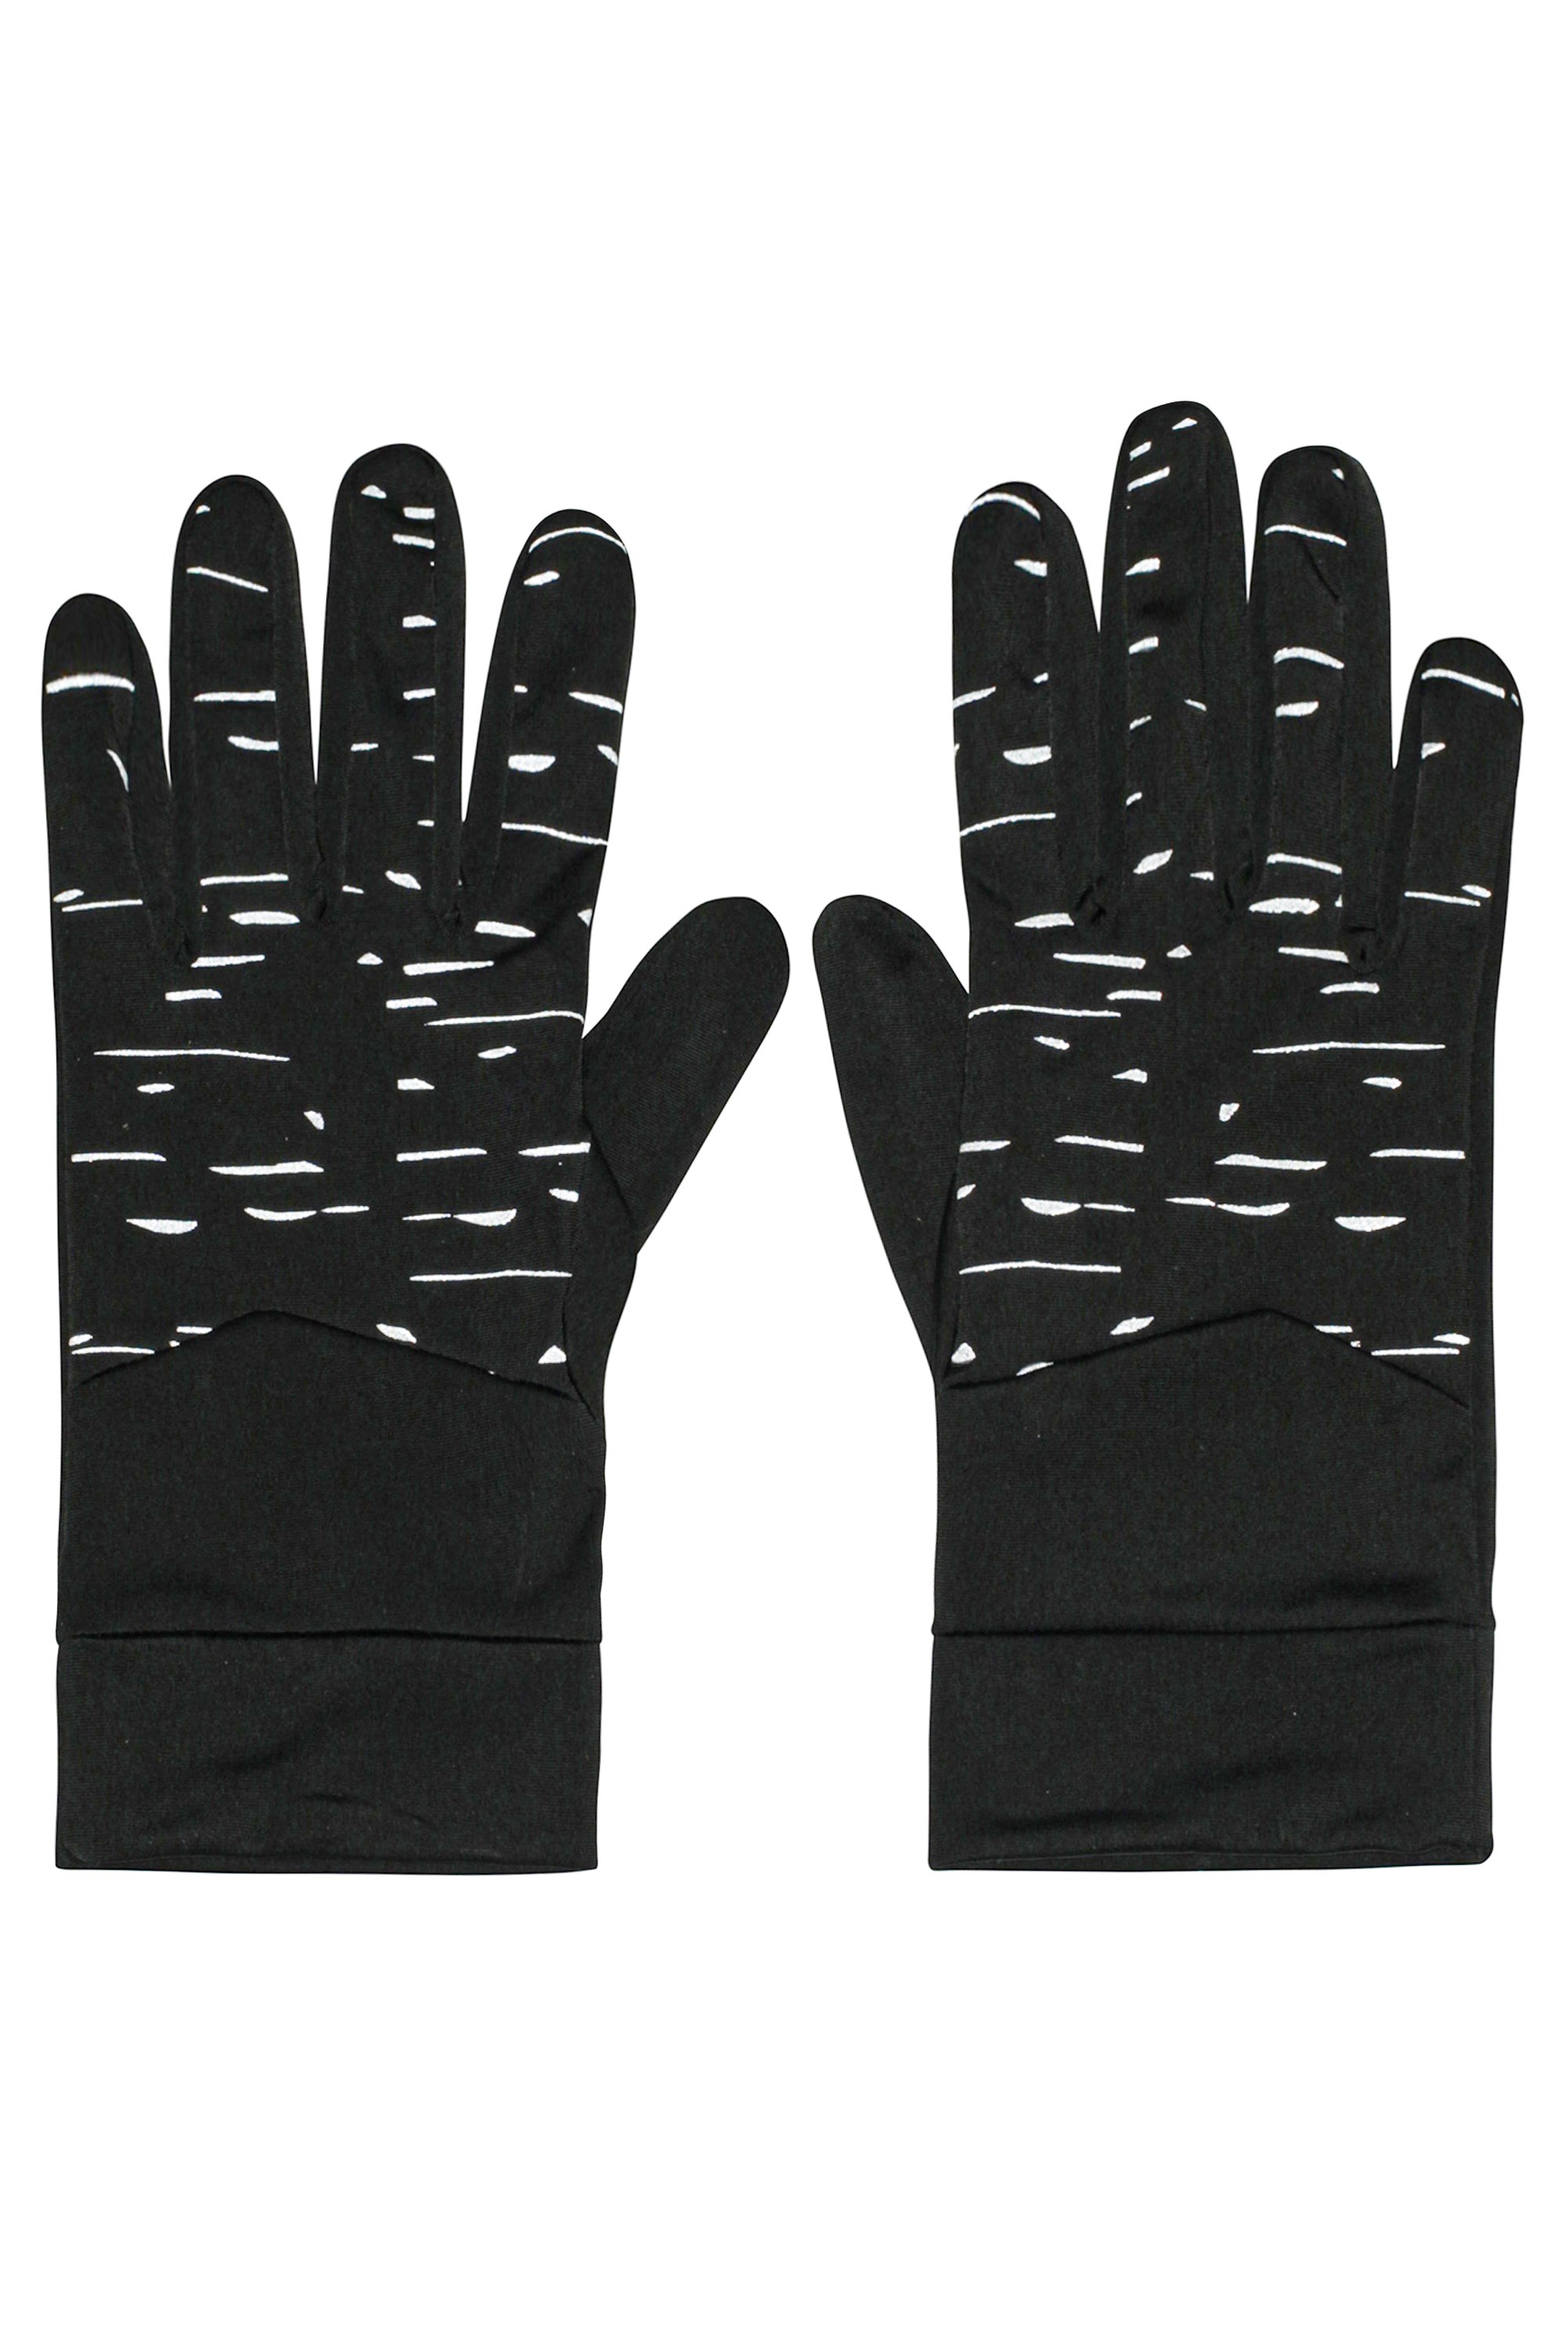 Illuminate Mens Stretch Running Gloves - Black